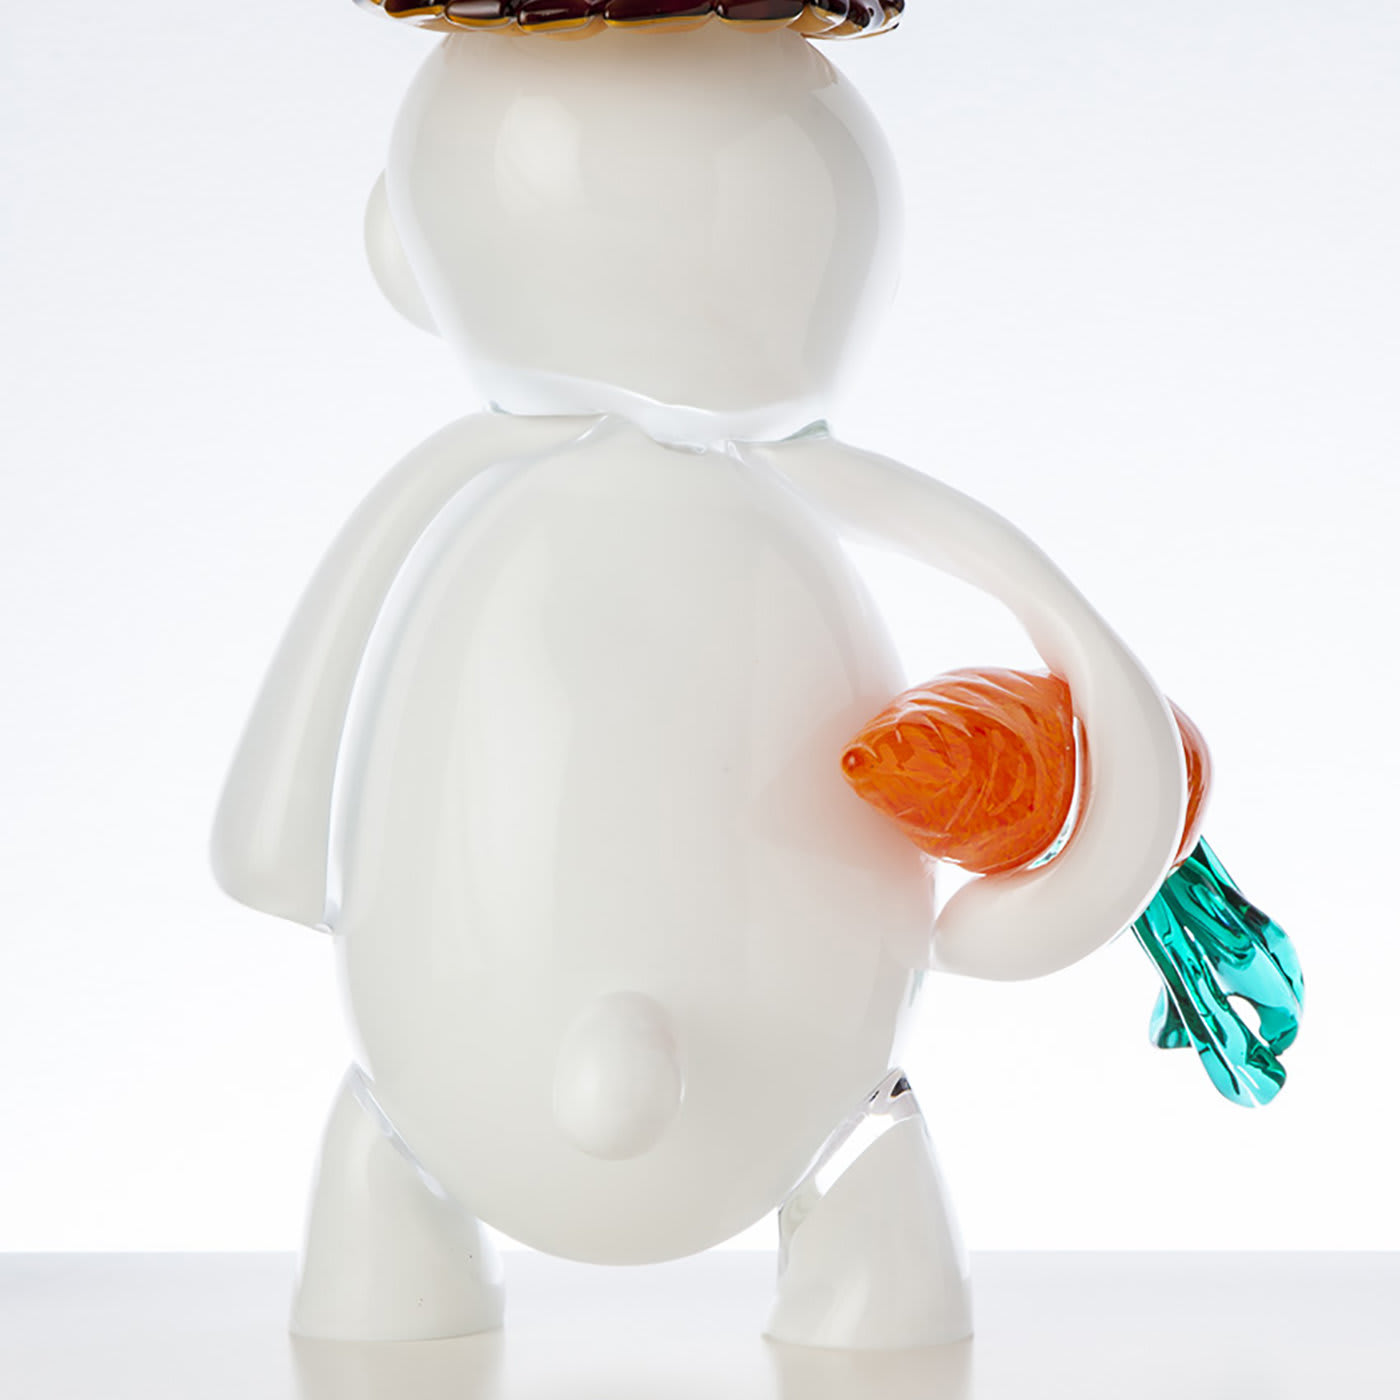 Rabbit Pop Comic Sculpture - Wave Murano Glass by Roberto Beltrami